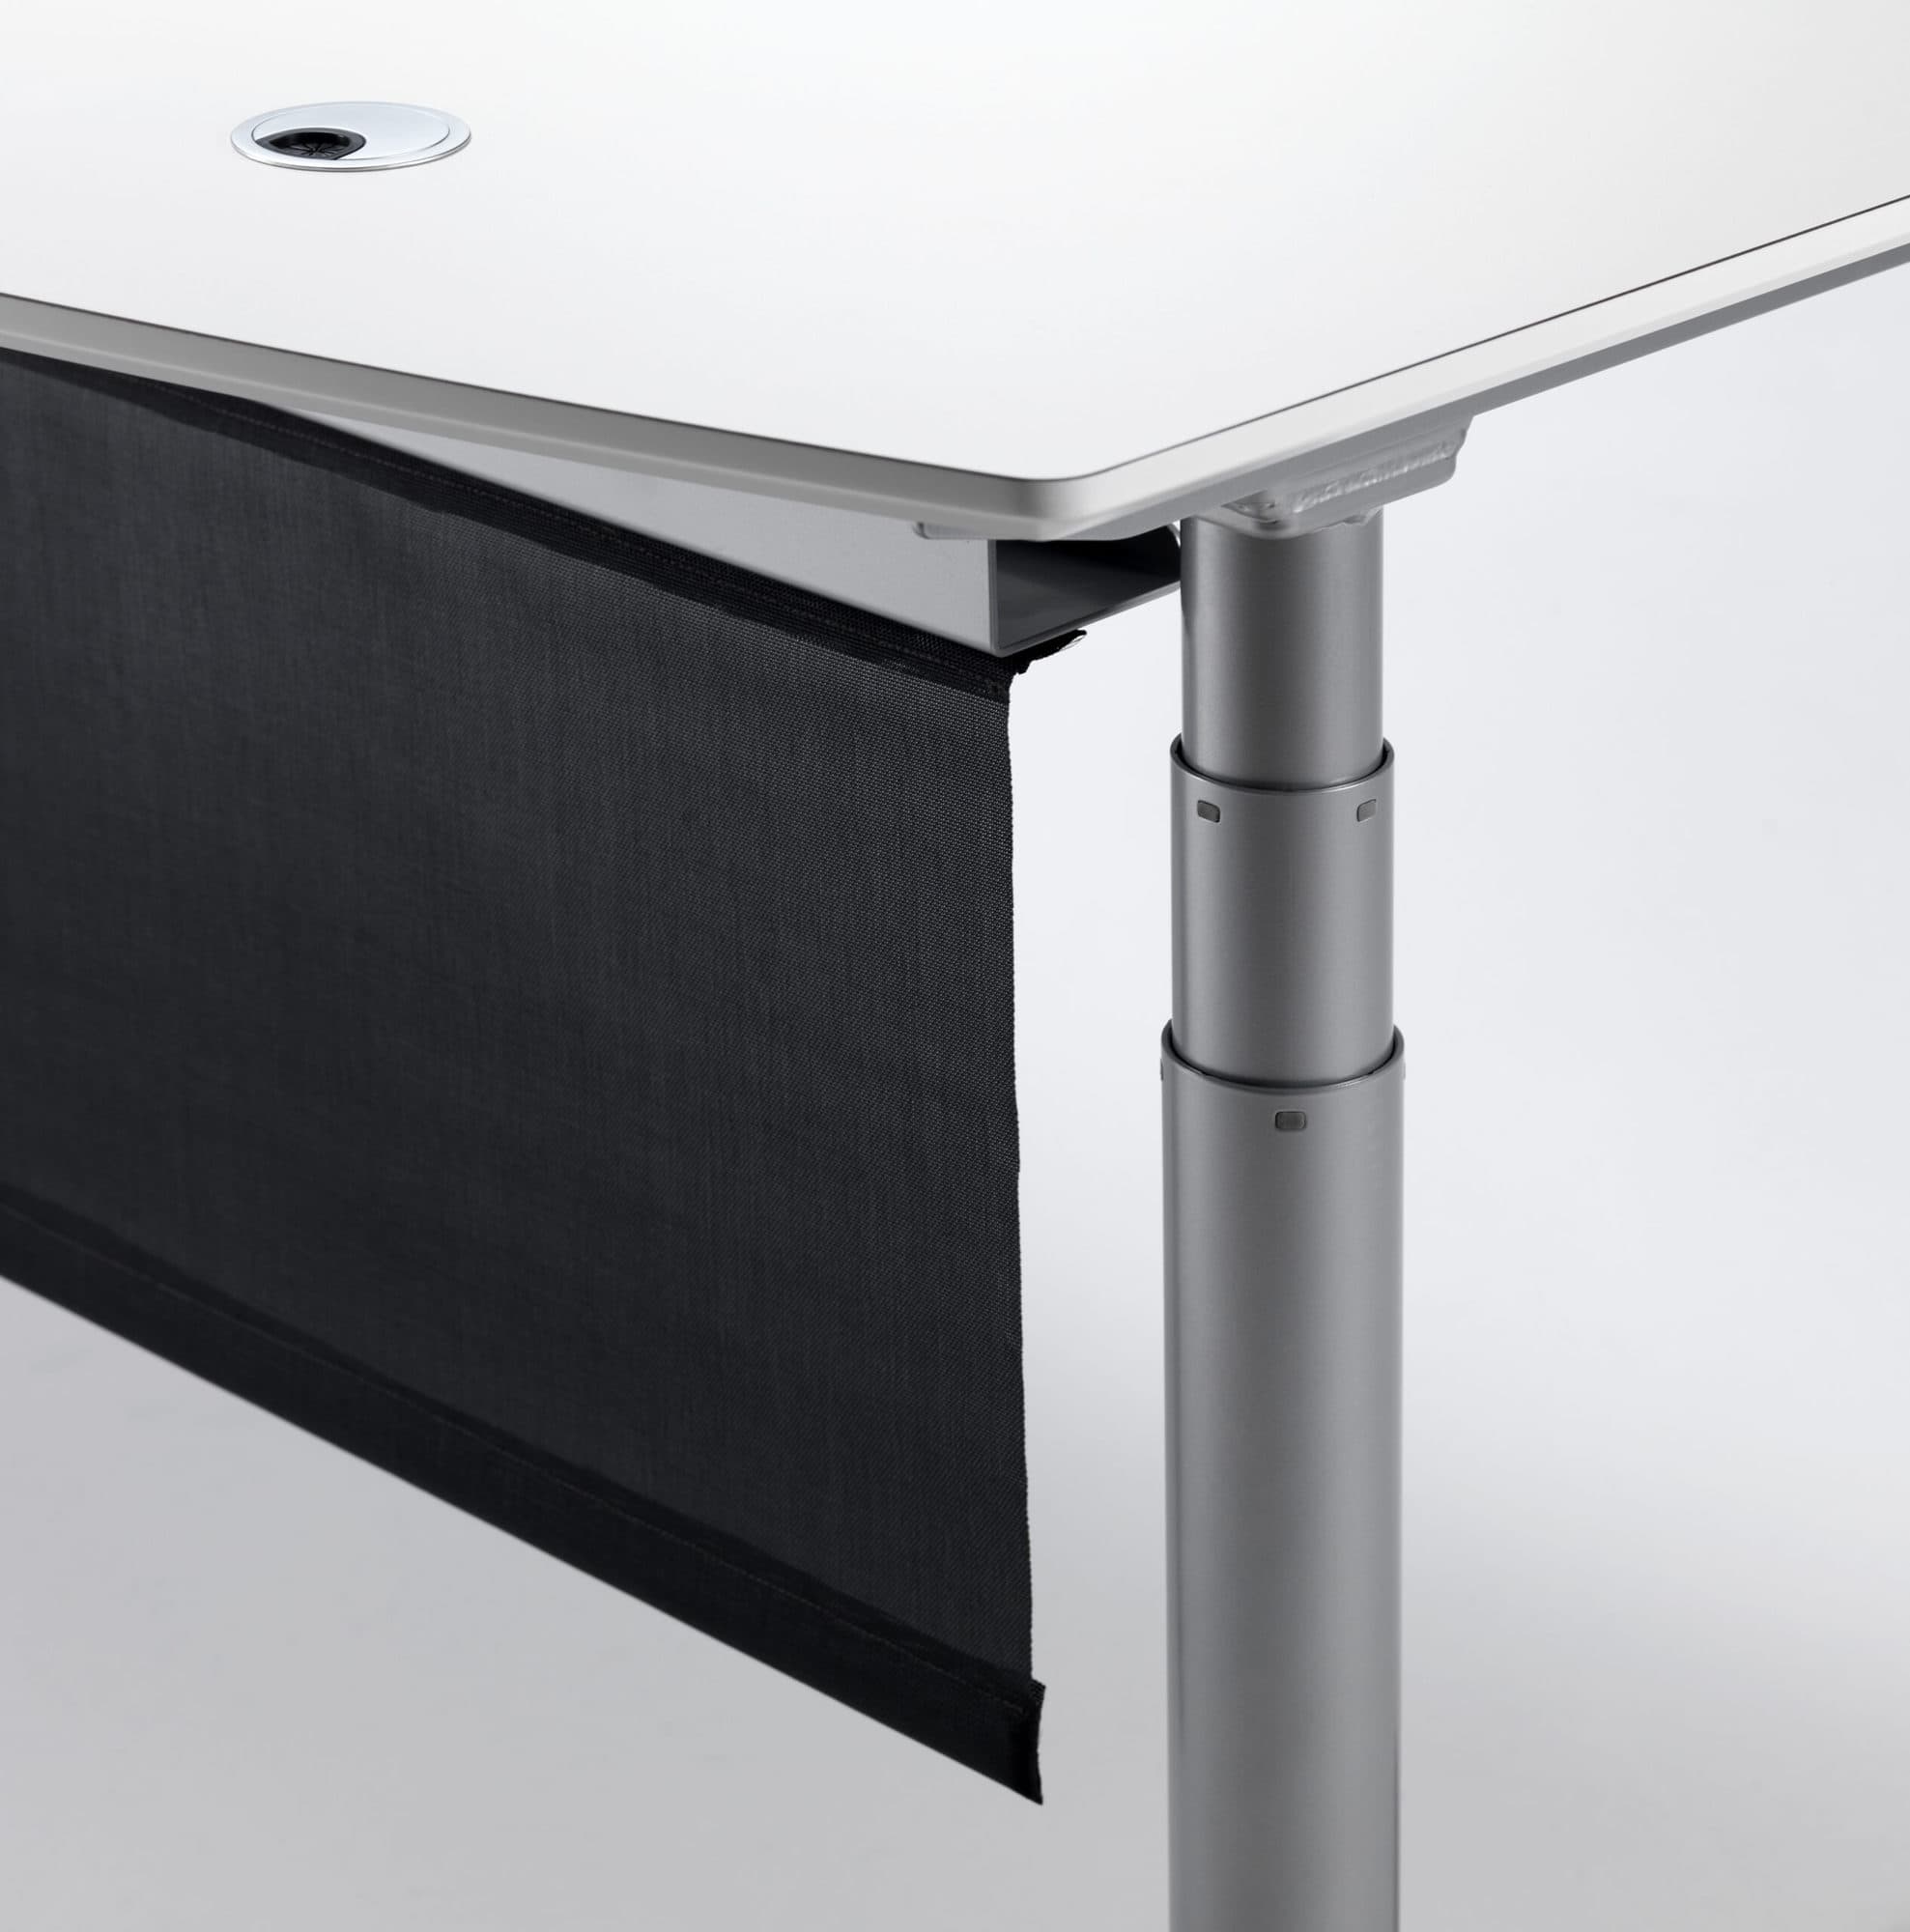 Cube Design - kontormøbler - skrivebord - hæve-sænke skrivebord - gardin - integreret kabelbakke